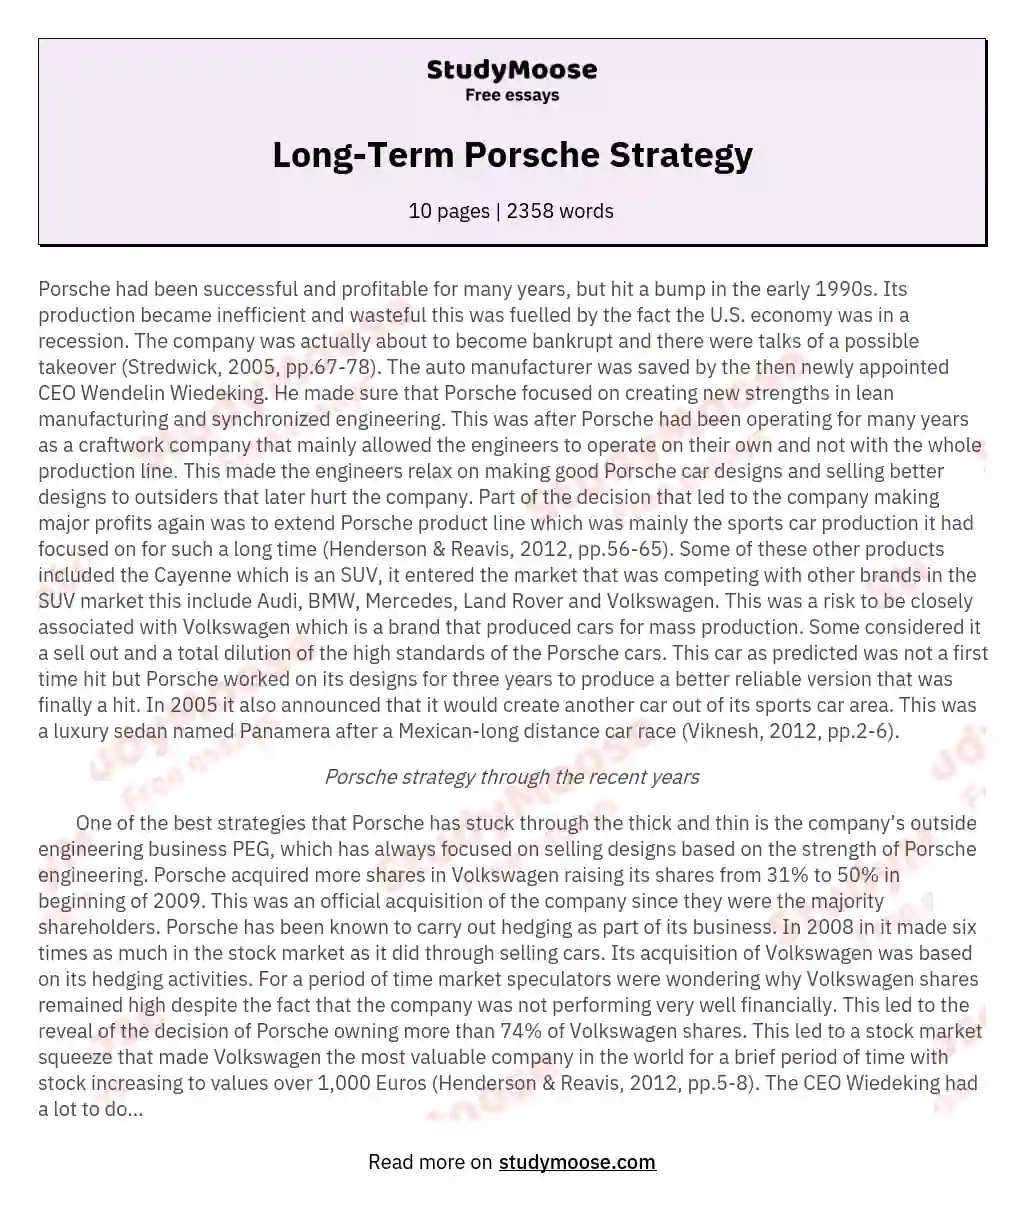 Long-Term Porsche Strategy essay